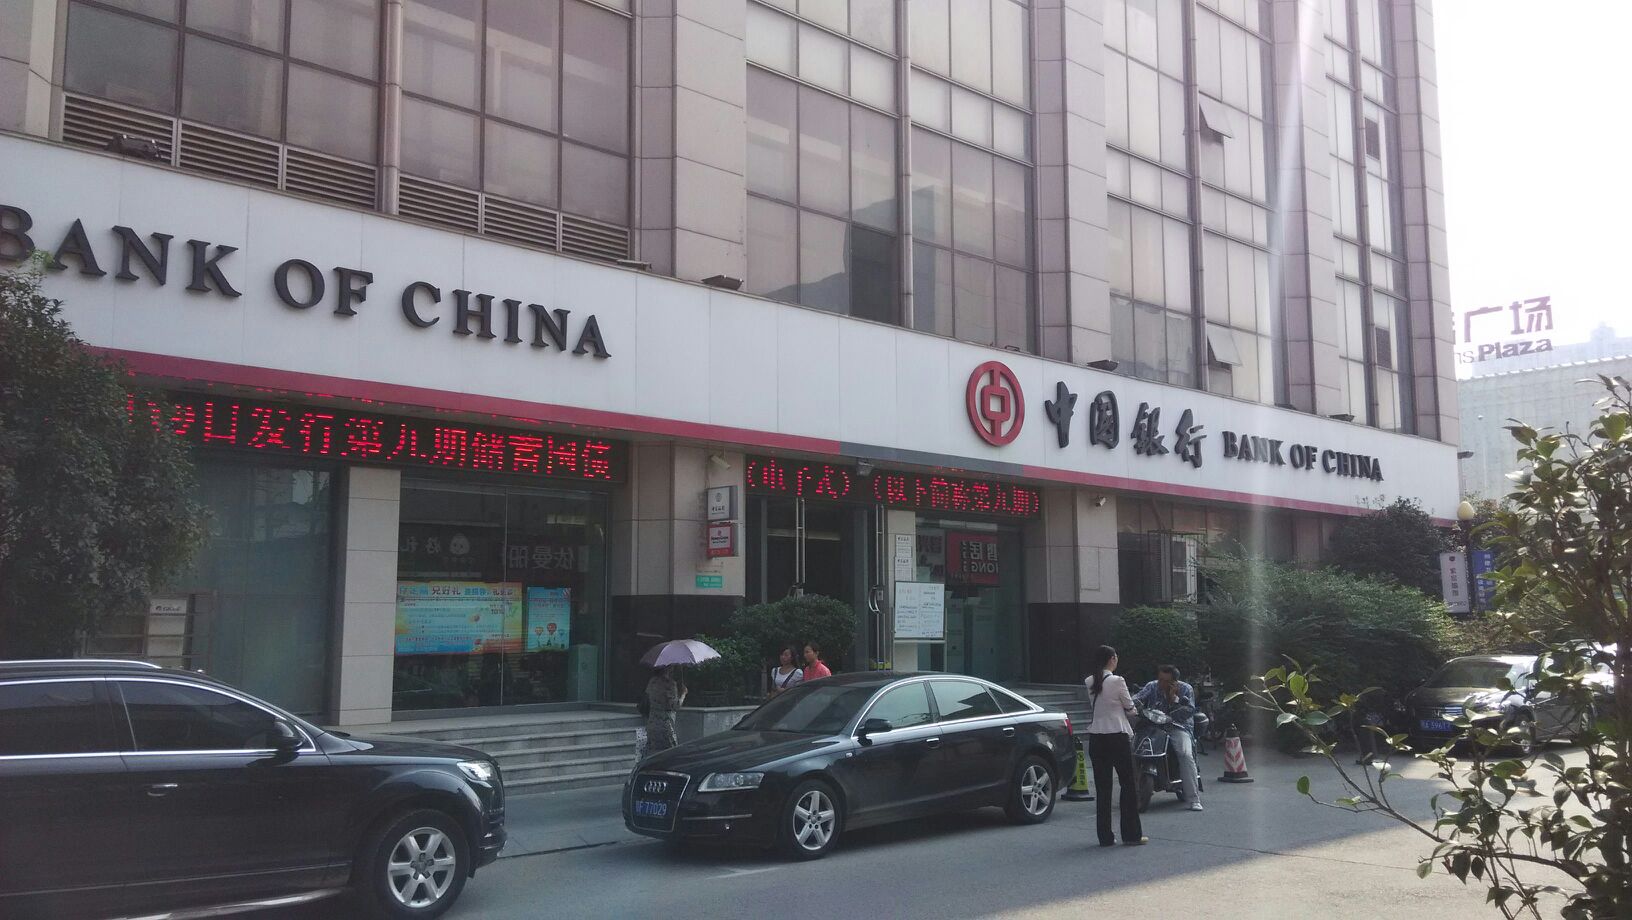 银行 金融  中国银行(新世界百货店)共多少人浏览:3570349  电话